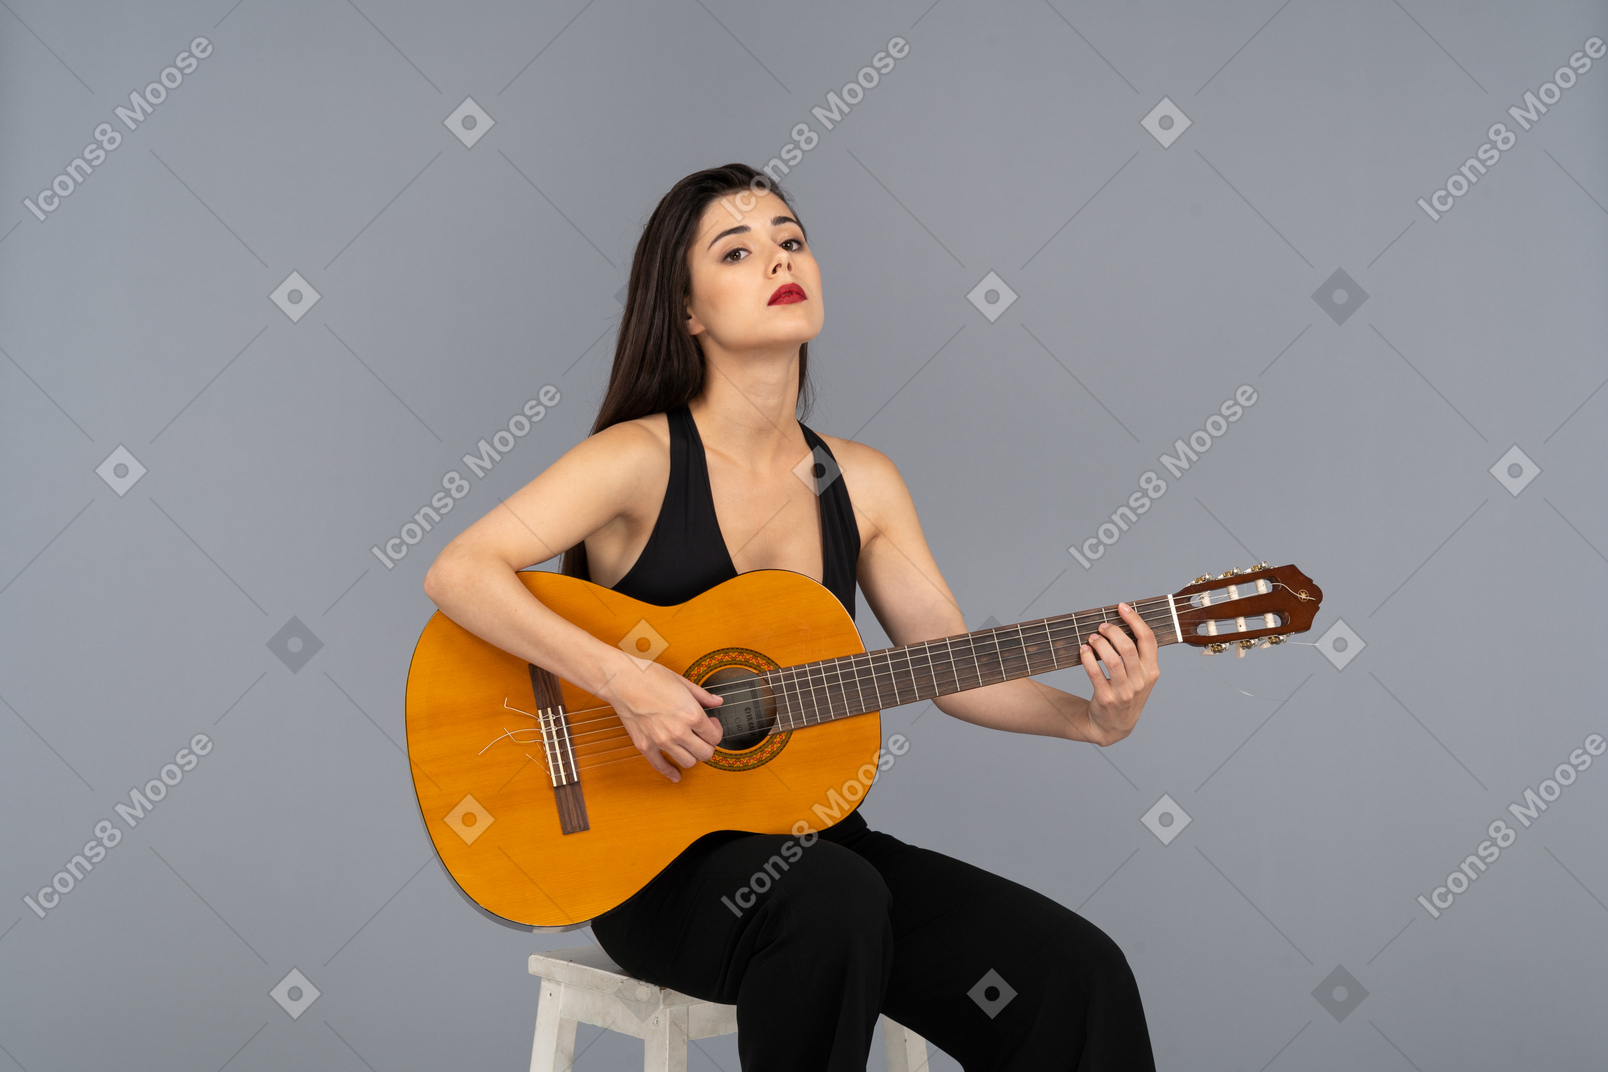 Vorderansicht einer sitzenden jungen dame im schwarzen anzug, die die gitarre hält und den kopf hebt